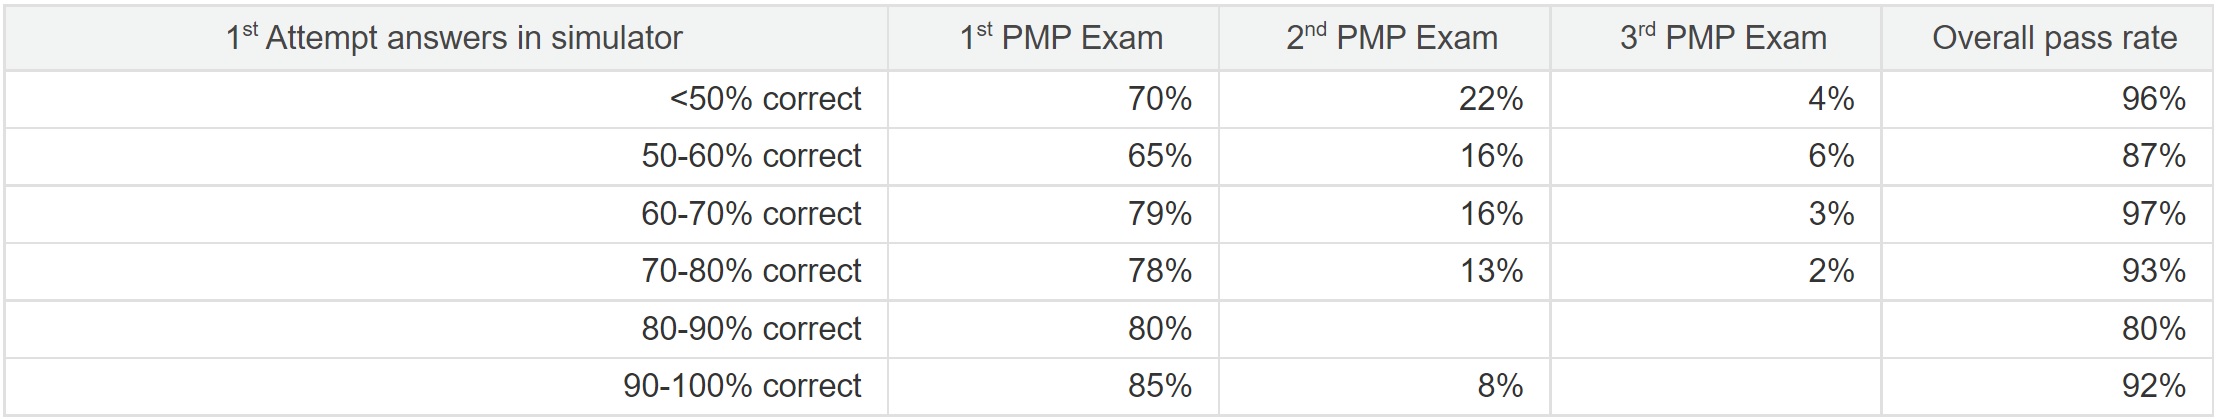 pmp-sim_statistics_for_Spanish_exam_feedback_tab.jpg - 151.80 kB